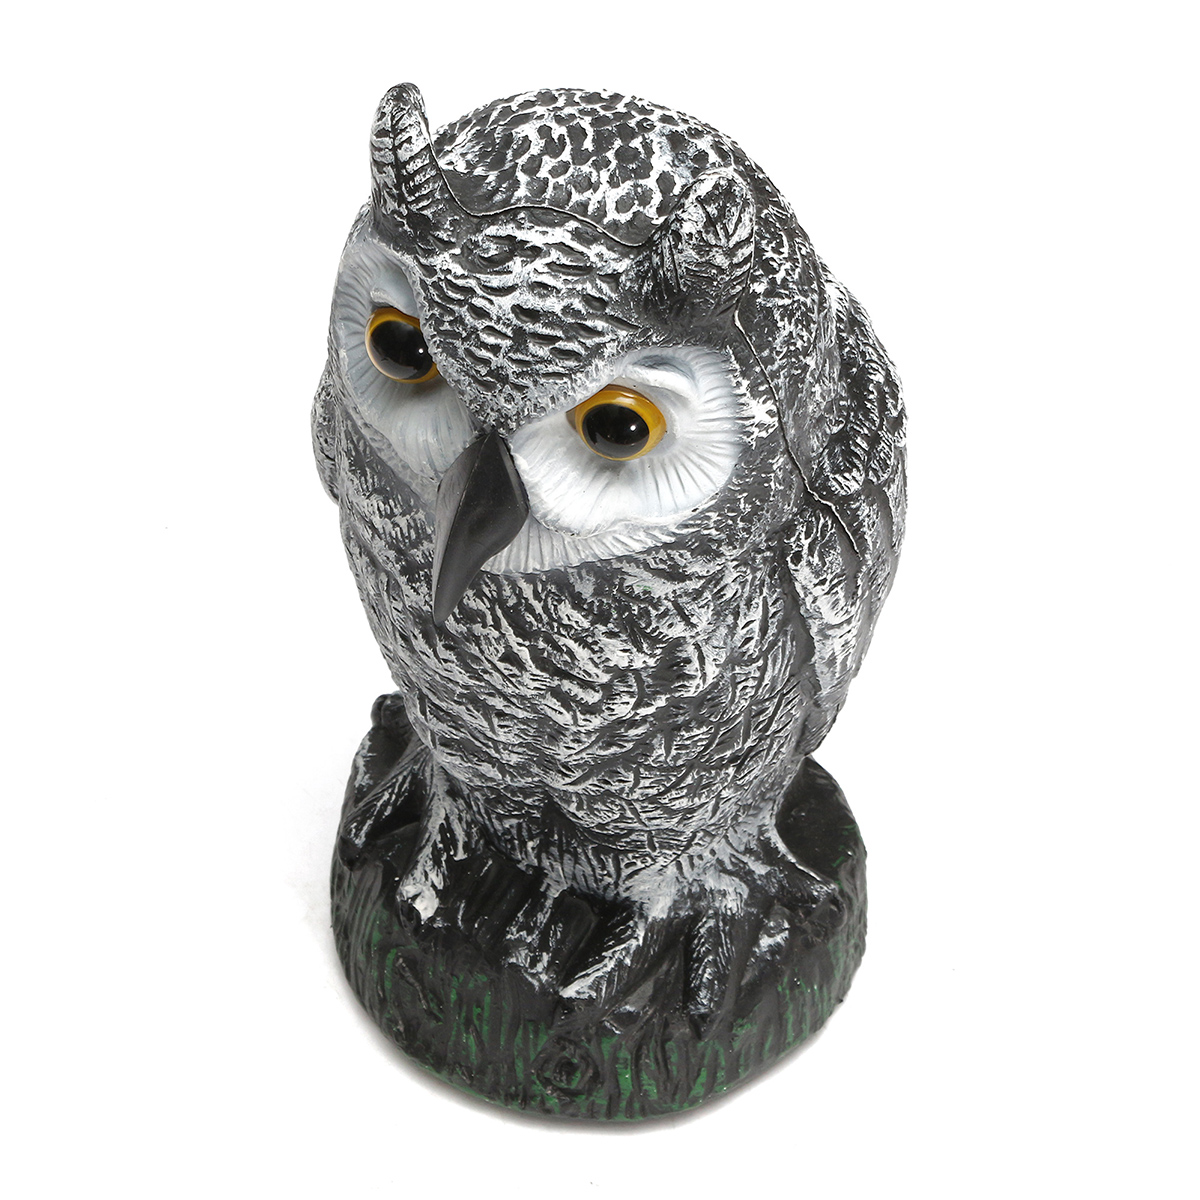 Plastic-Standing-Fake-Owl-Hunting-Decoy-Deterrent-Scarer-Repeller-Garden-Decor-1243366-3